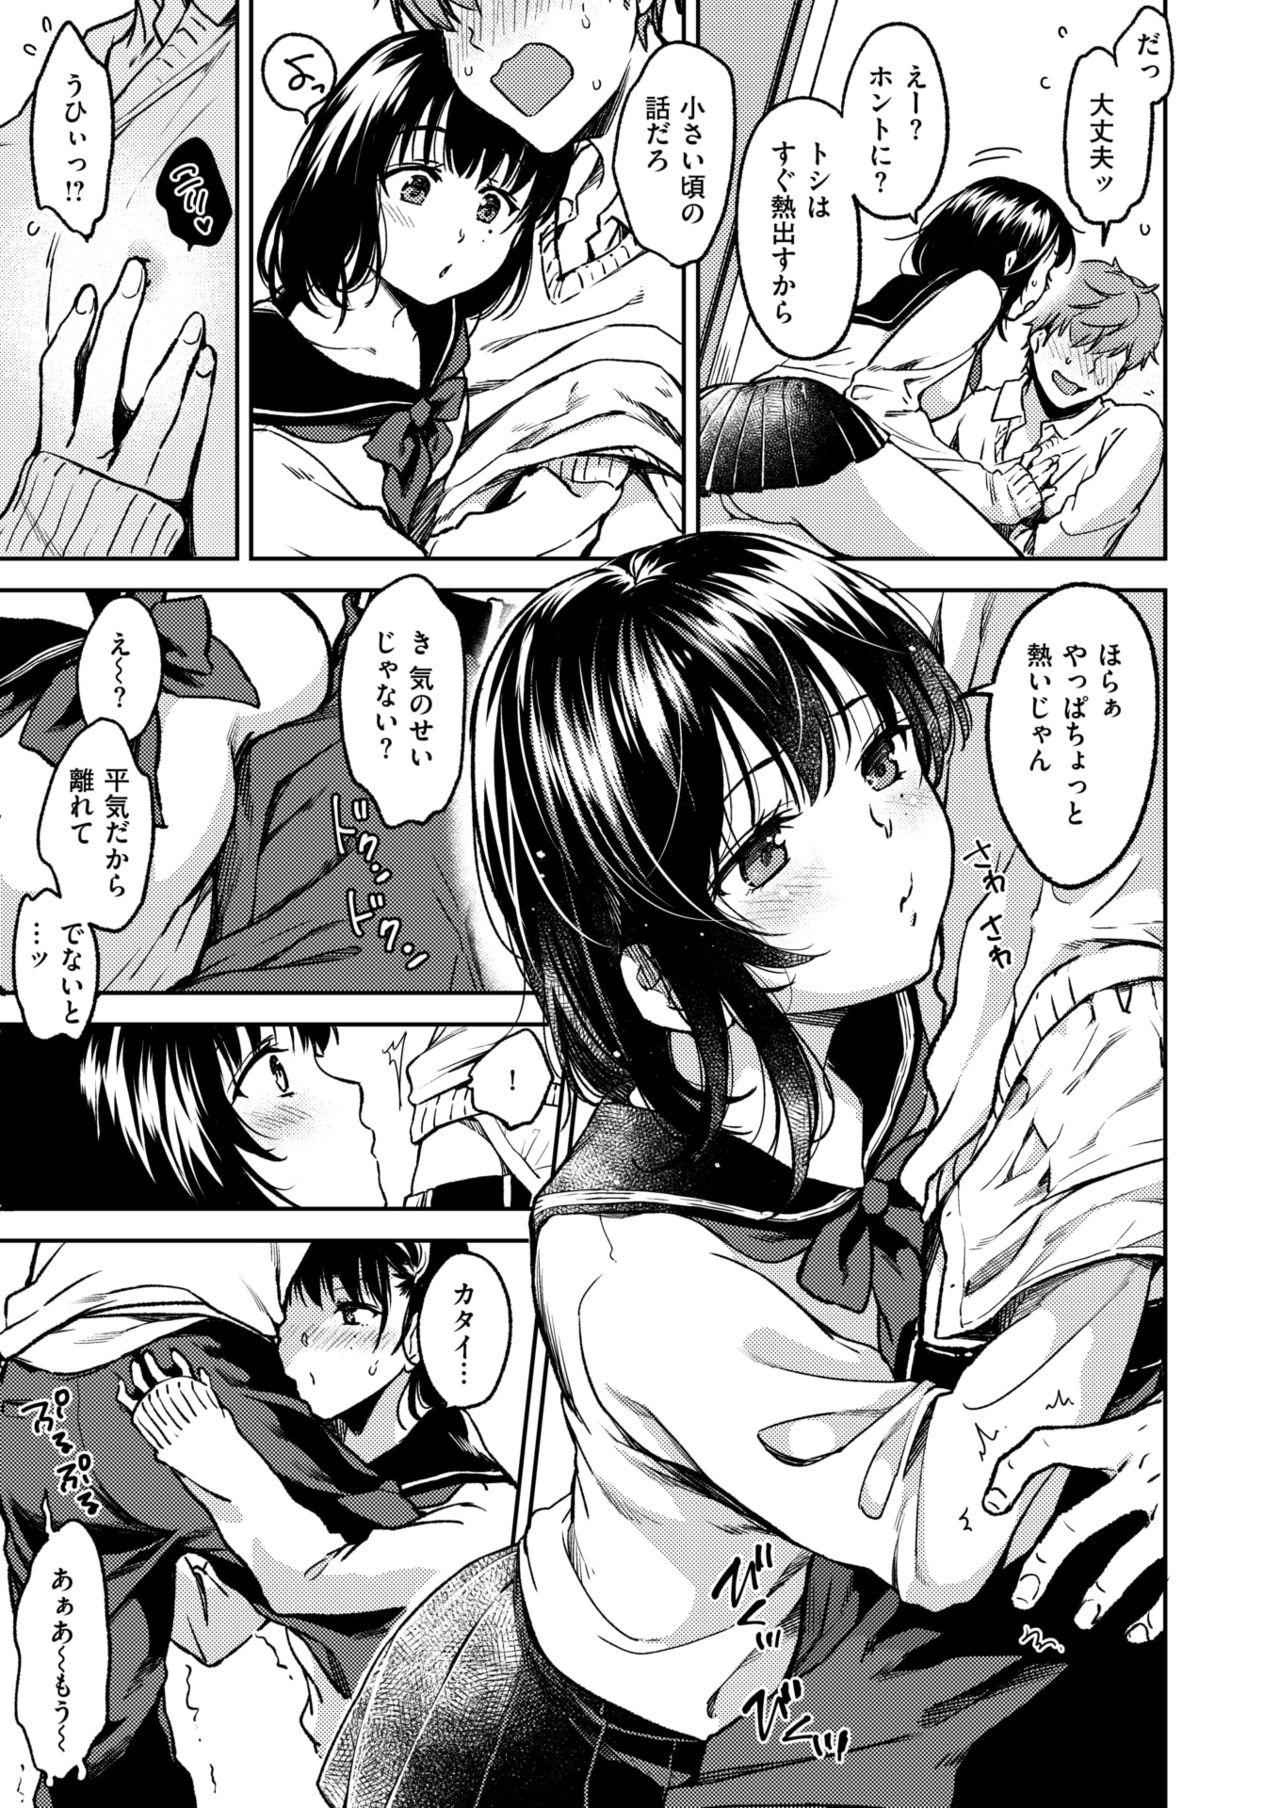 Money Talks Bokura no Hajimete 18 Year Old Porn - Page 5